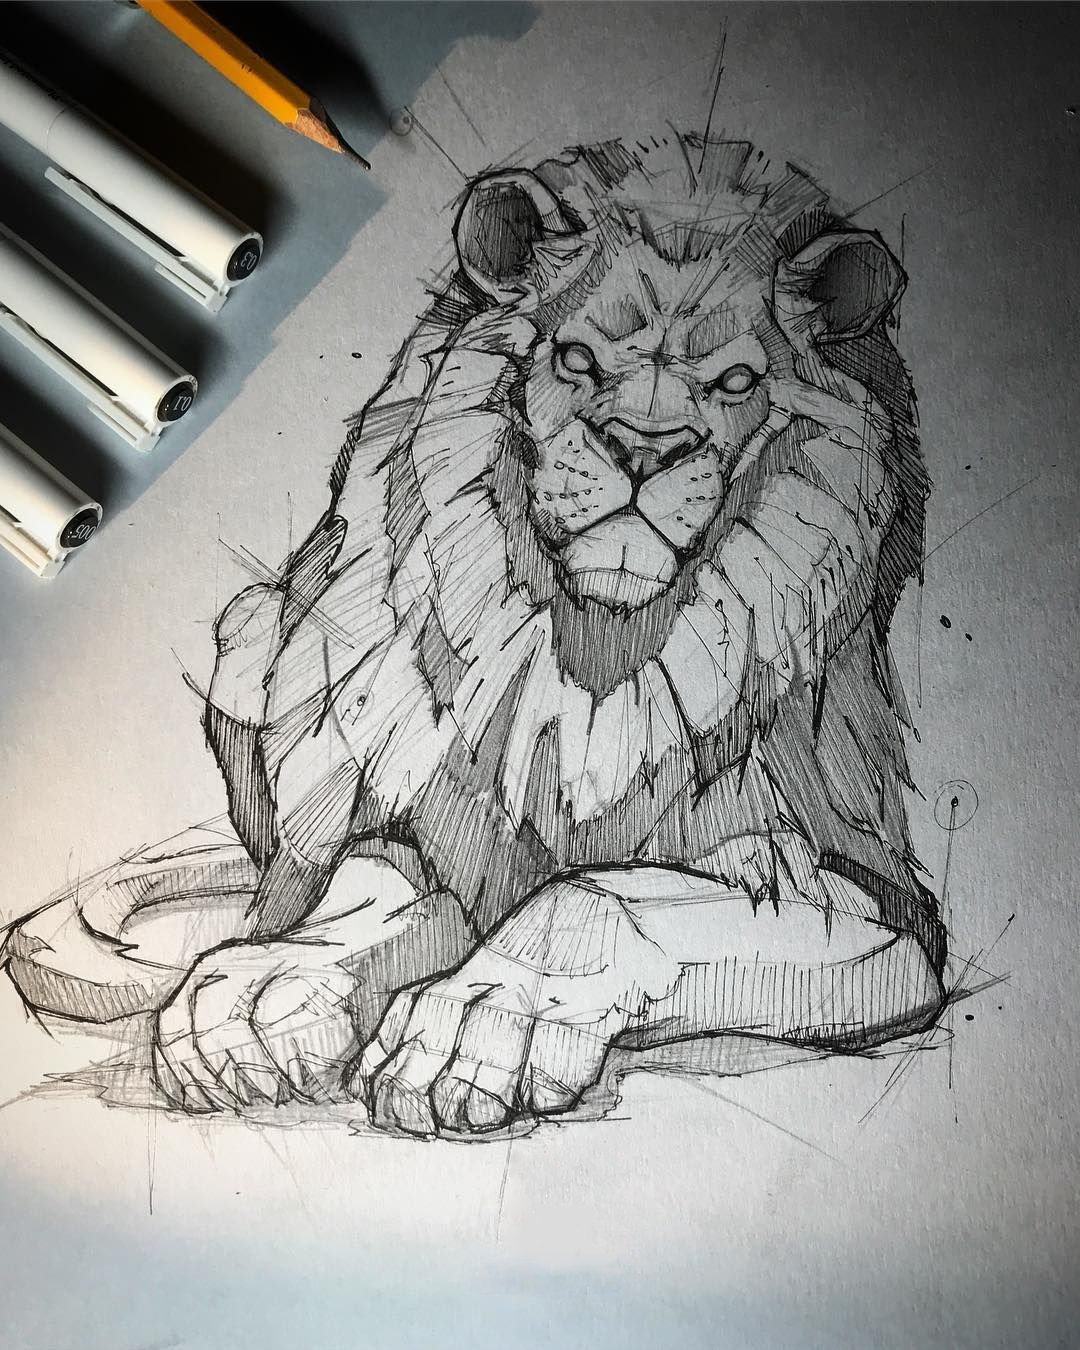 Срисовать картинку льва